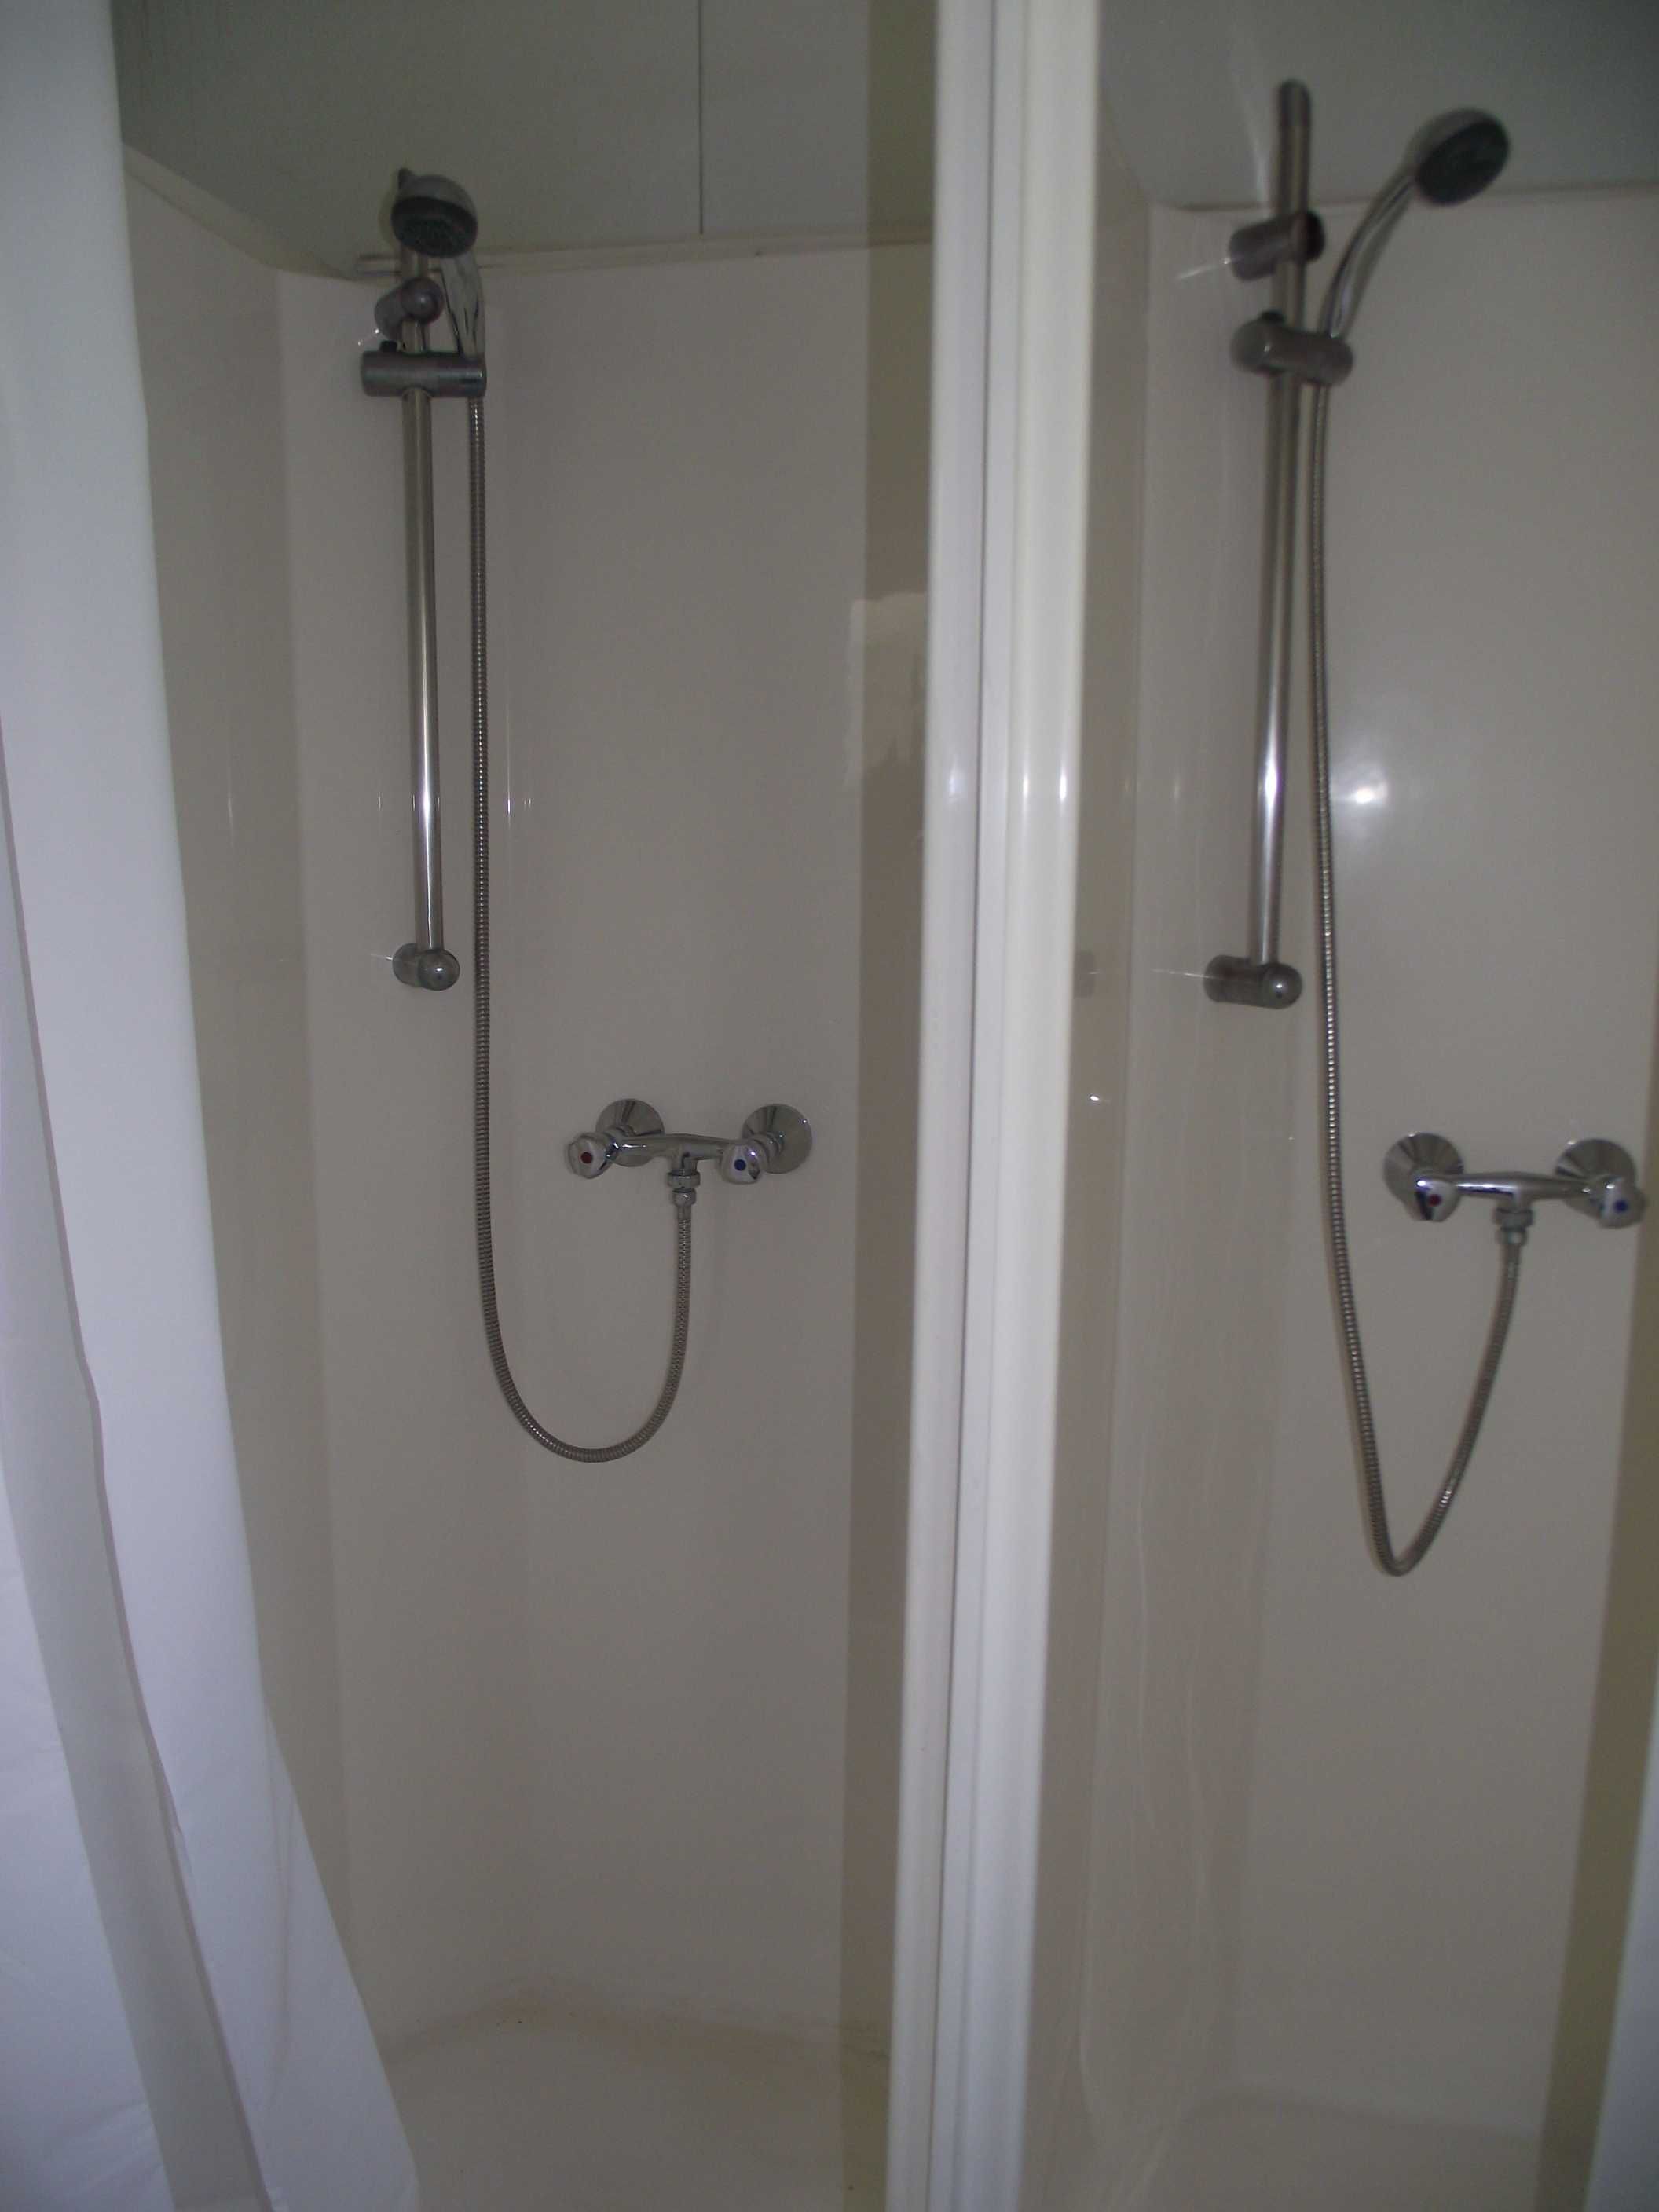 Kontener sanitarny z szambem damsko - męski , uniwersalny prysznic wc